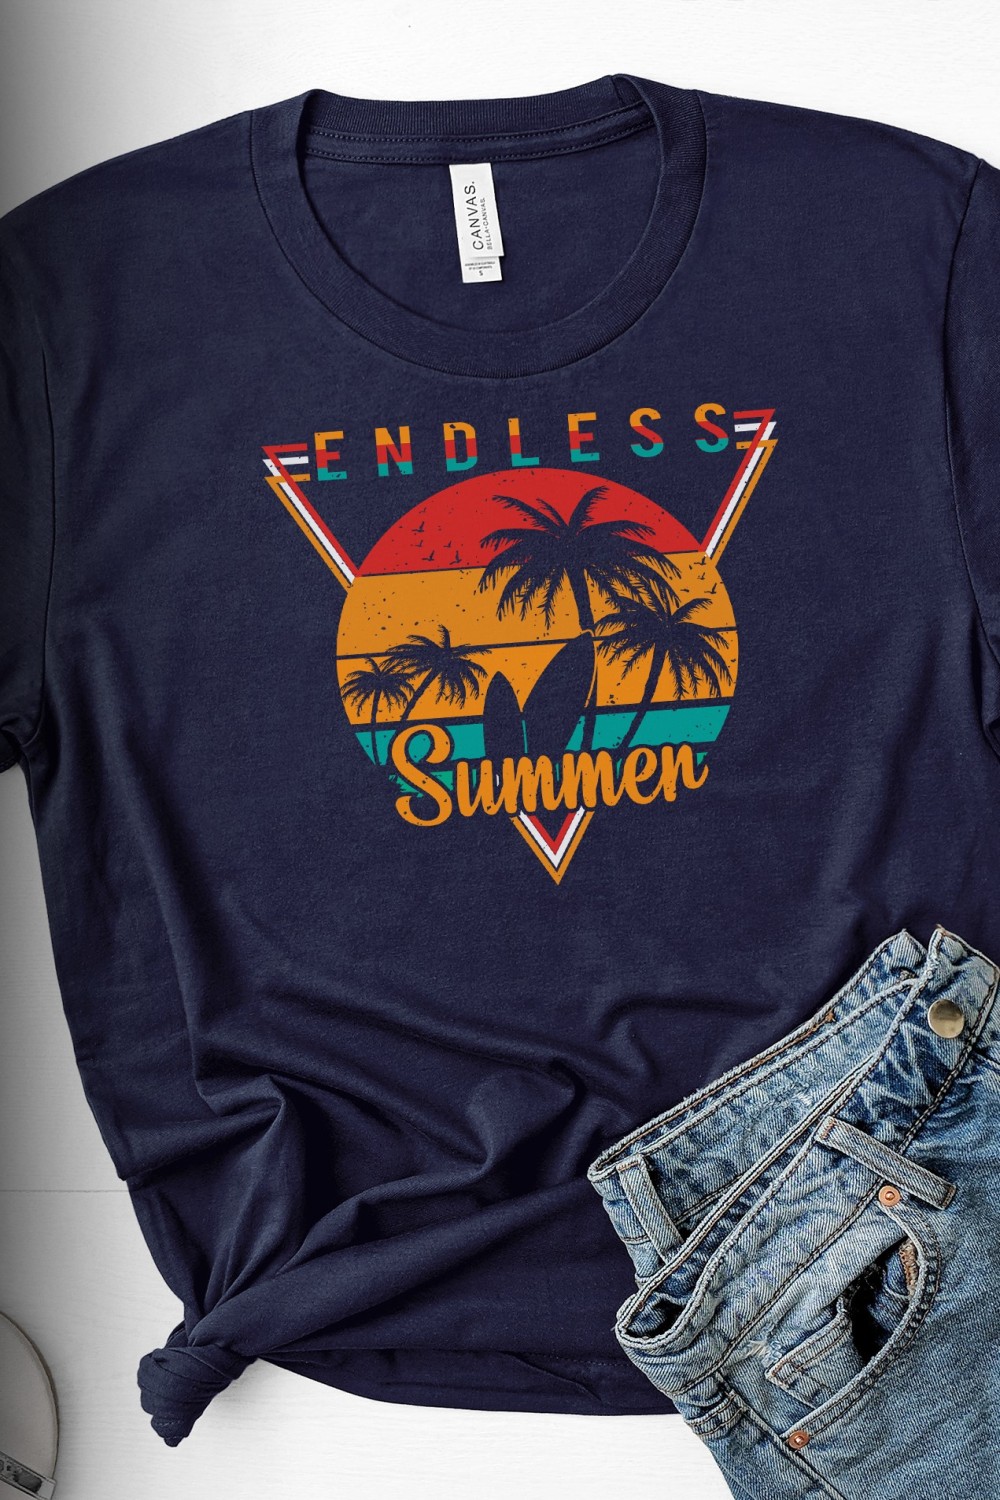 Endless Summer T-shirt Design pinterest preview image.